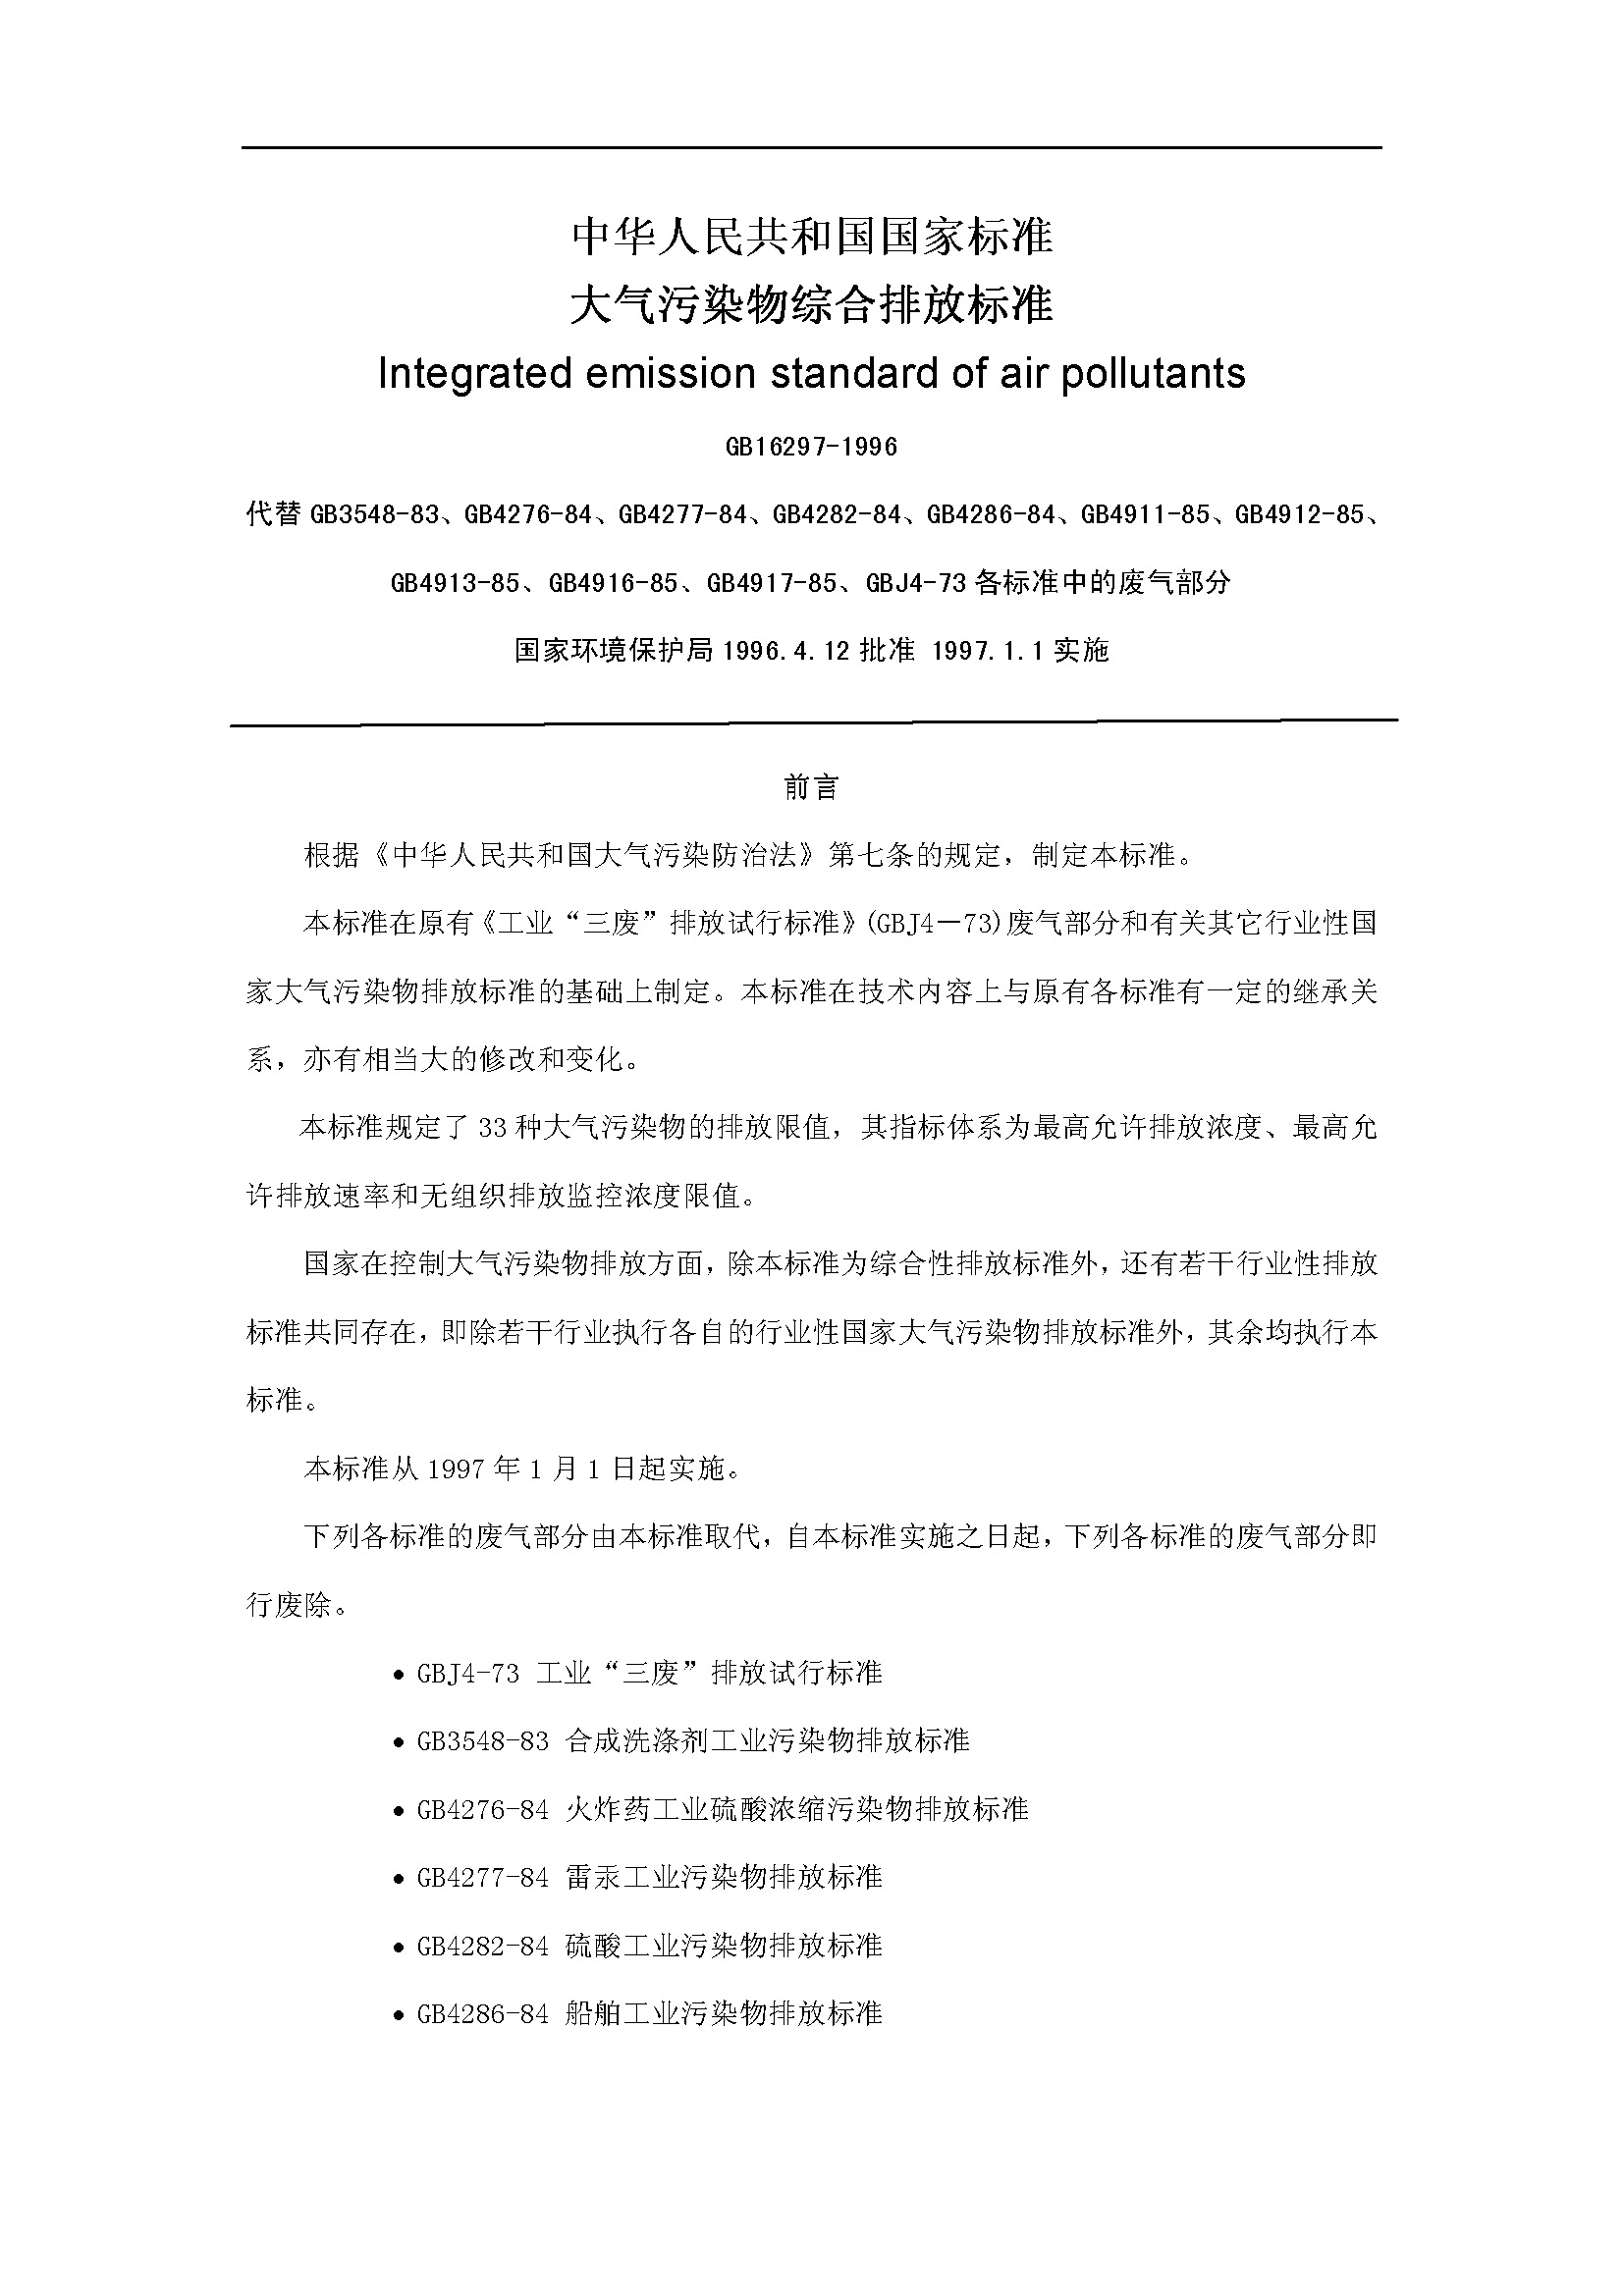 《大气污染物综合排放标准GB16297-1996》